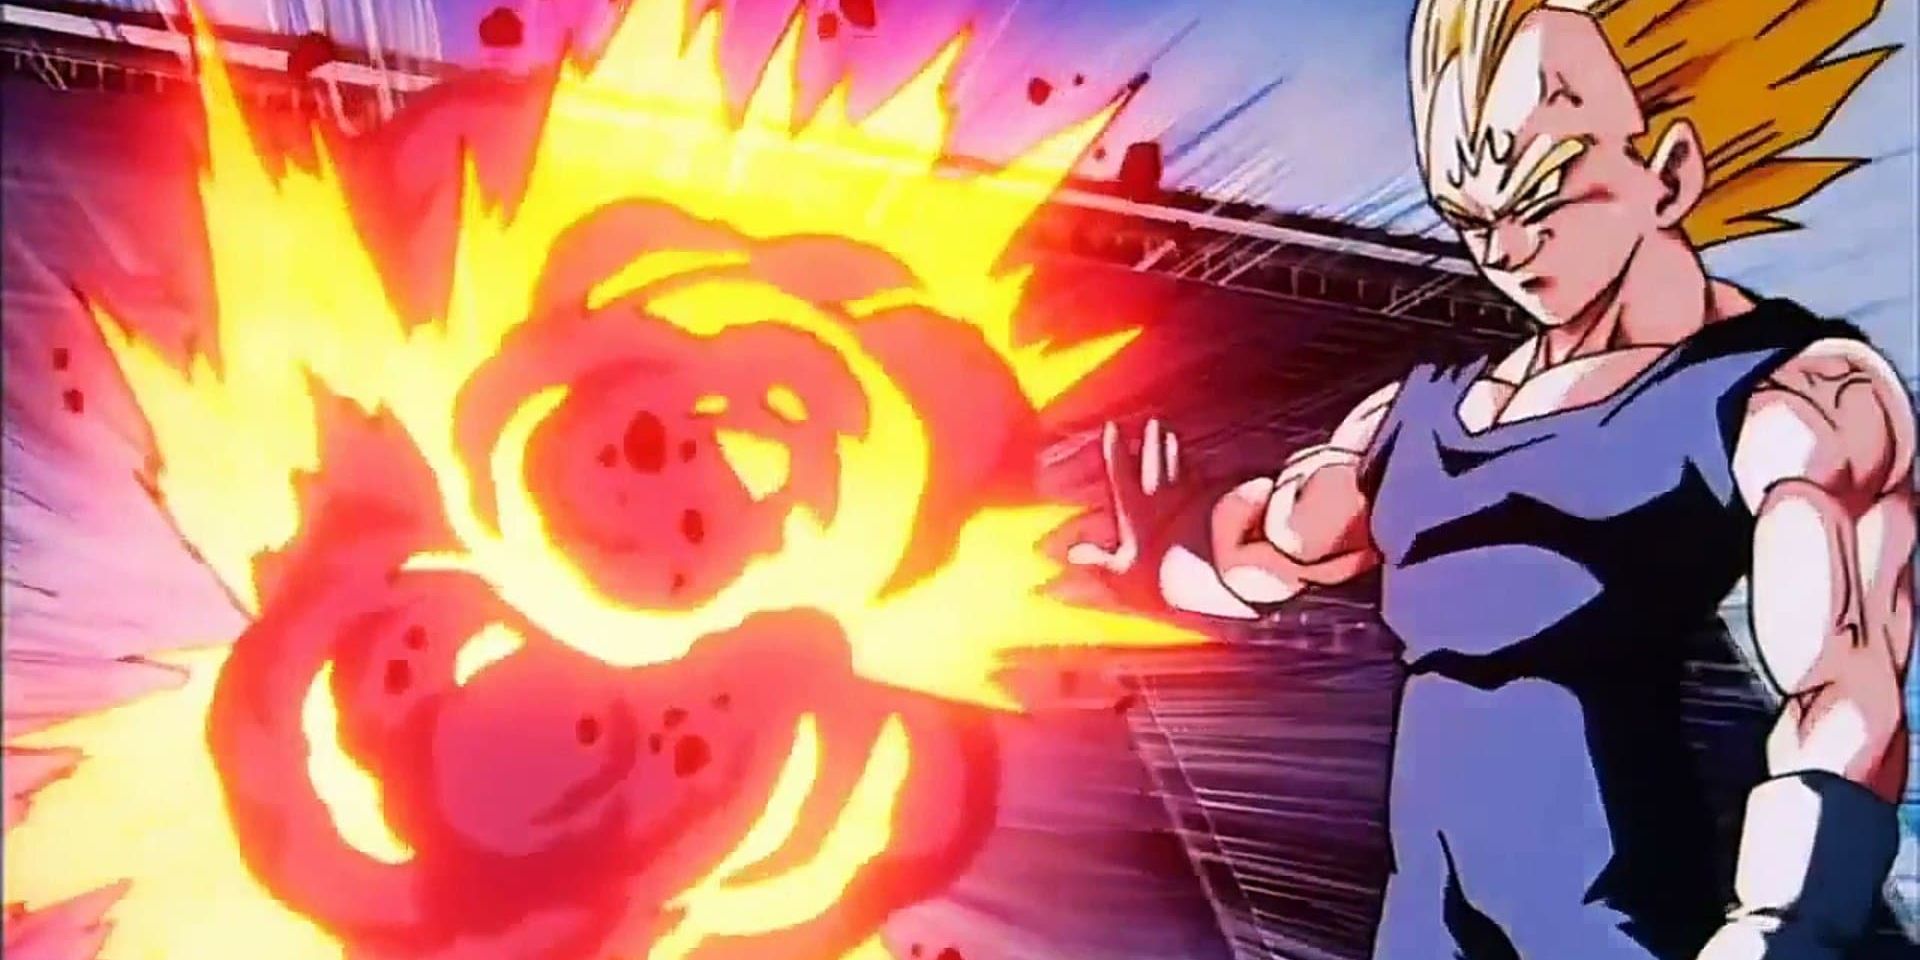 Majin Vegeta kills spectators in Dragon Ball Z